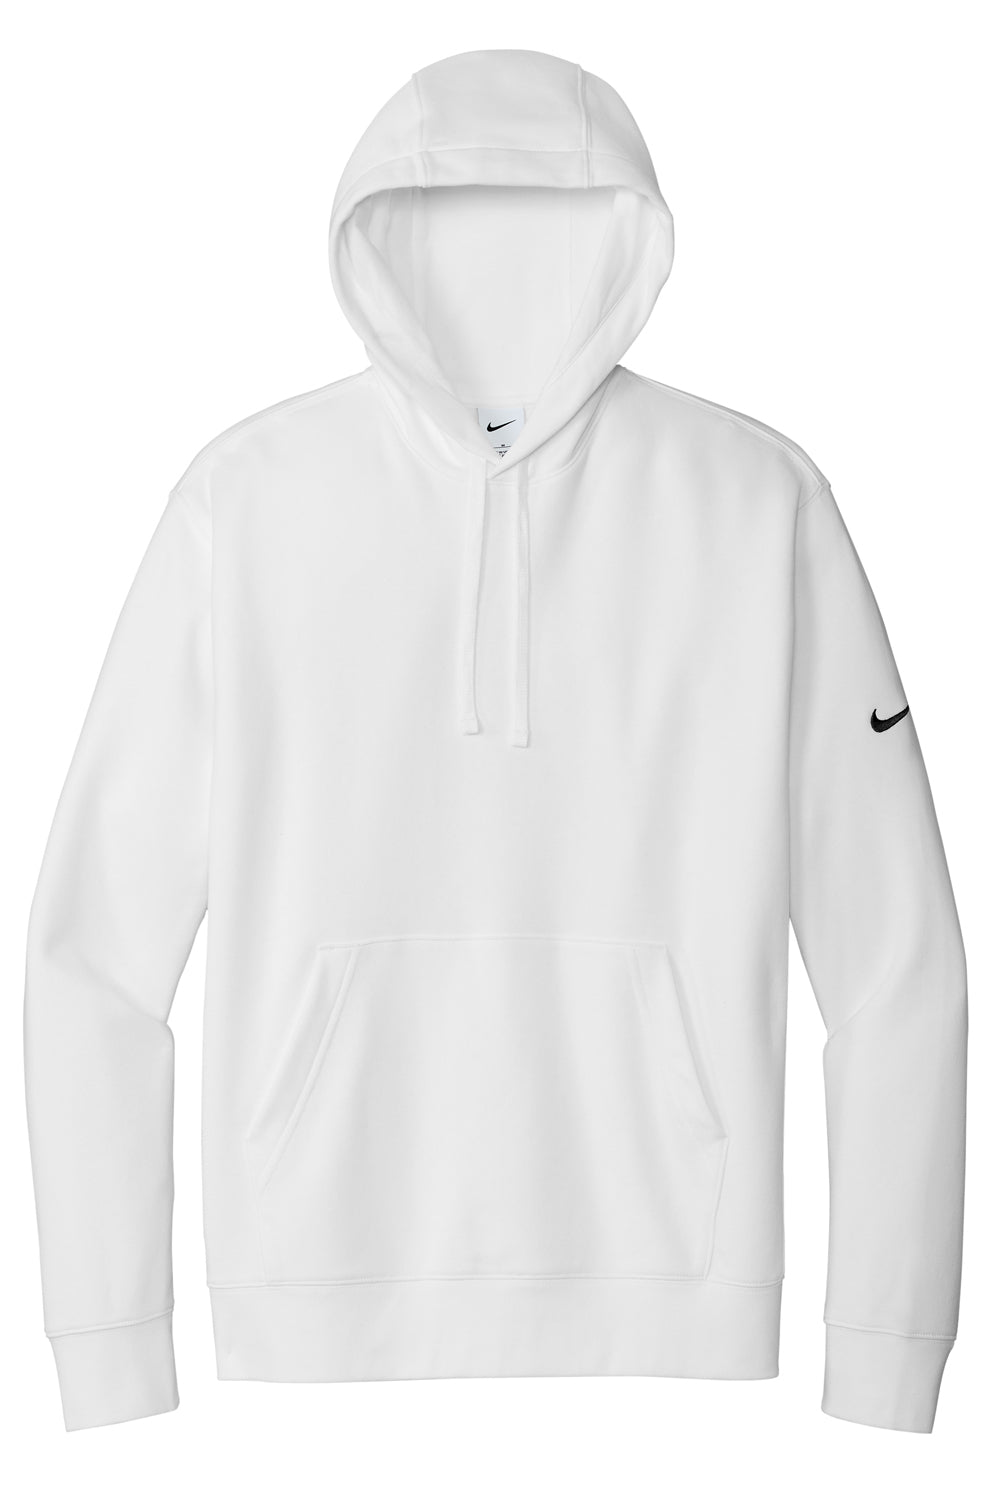 Nike NKDR1499 Mens Club Fleece Hooded Sweatshirt Hoodie White Flat Front